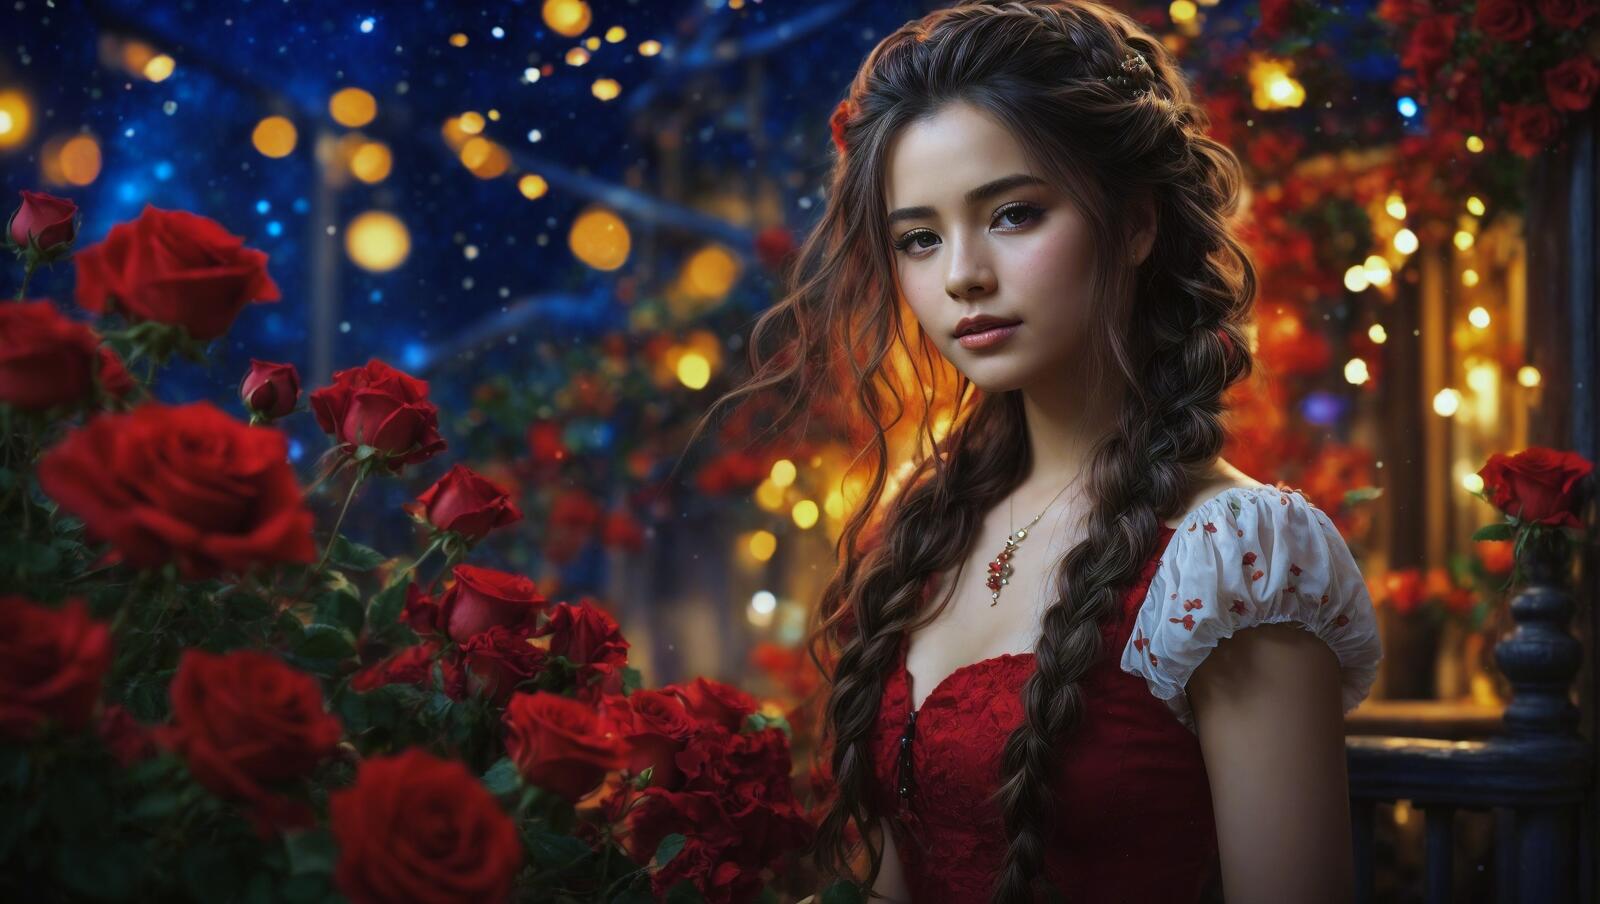 Бесплатное фото Красивая девушка держит в руке розы